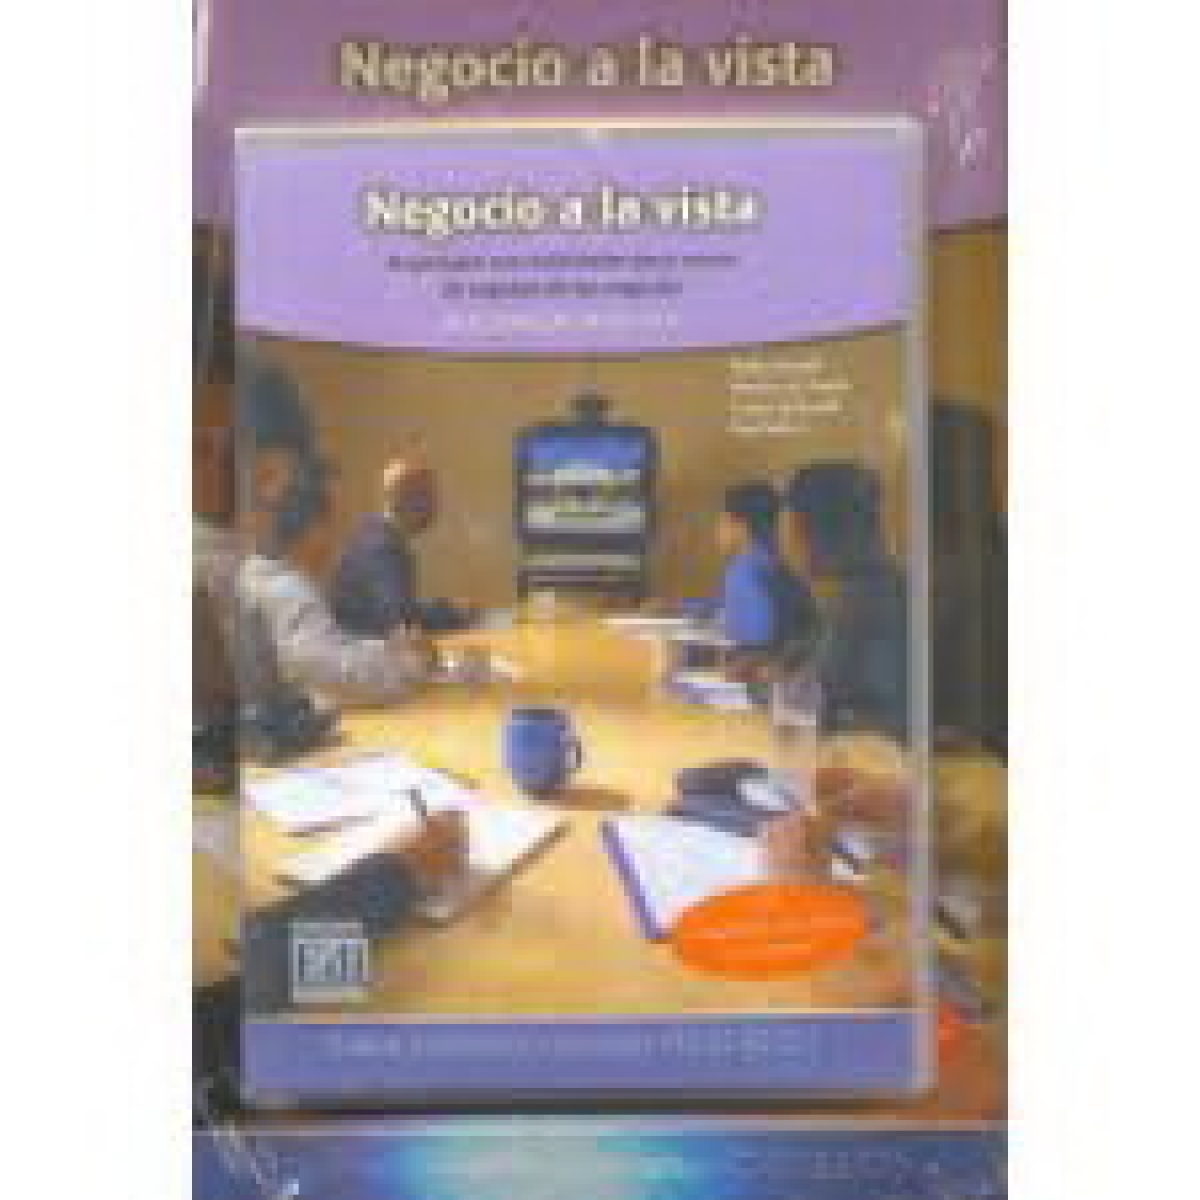 Negocio A La Vista - Libro + DVD 